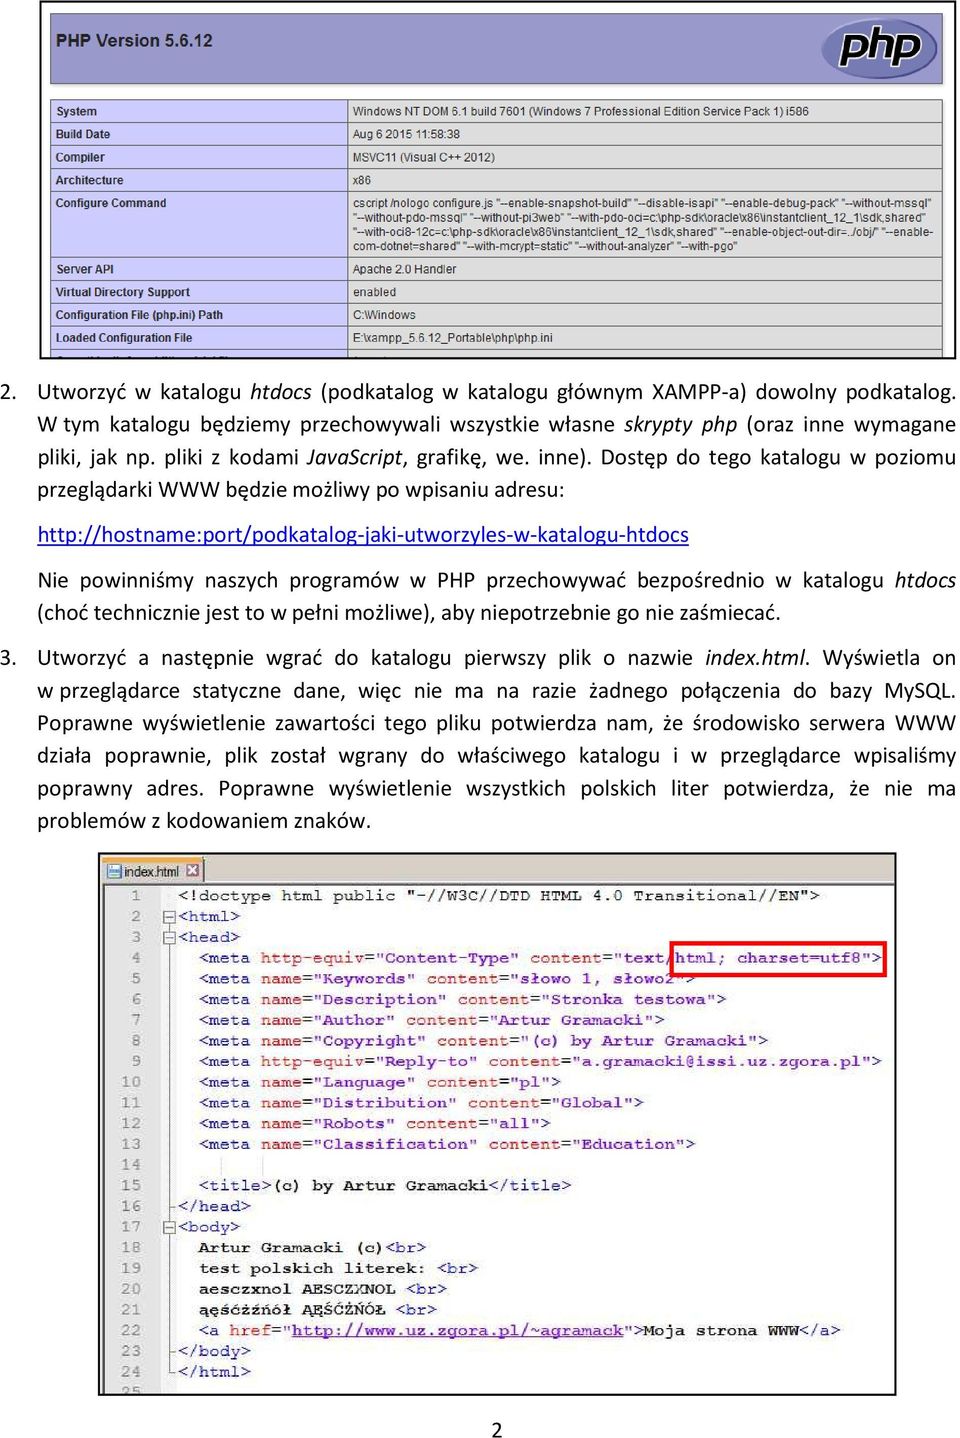 Dostęp do tego katalogu w poziomu przeglądarki WWW będzie możliwy po wpisaniu adresu: http://hostname:port/podkatalog-jaki-utworzyles-w-katalogu-htdocs Nie powinniśmy naszych programów w PHP